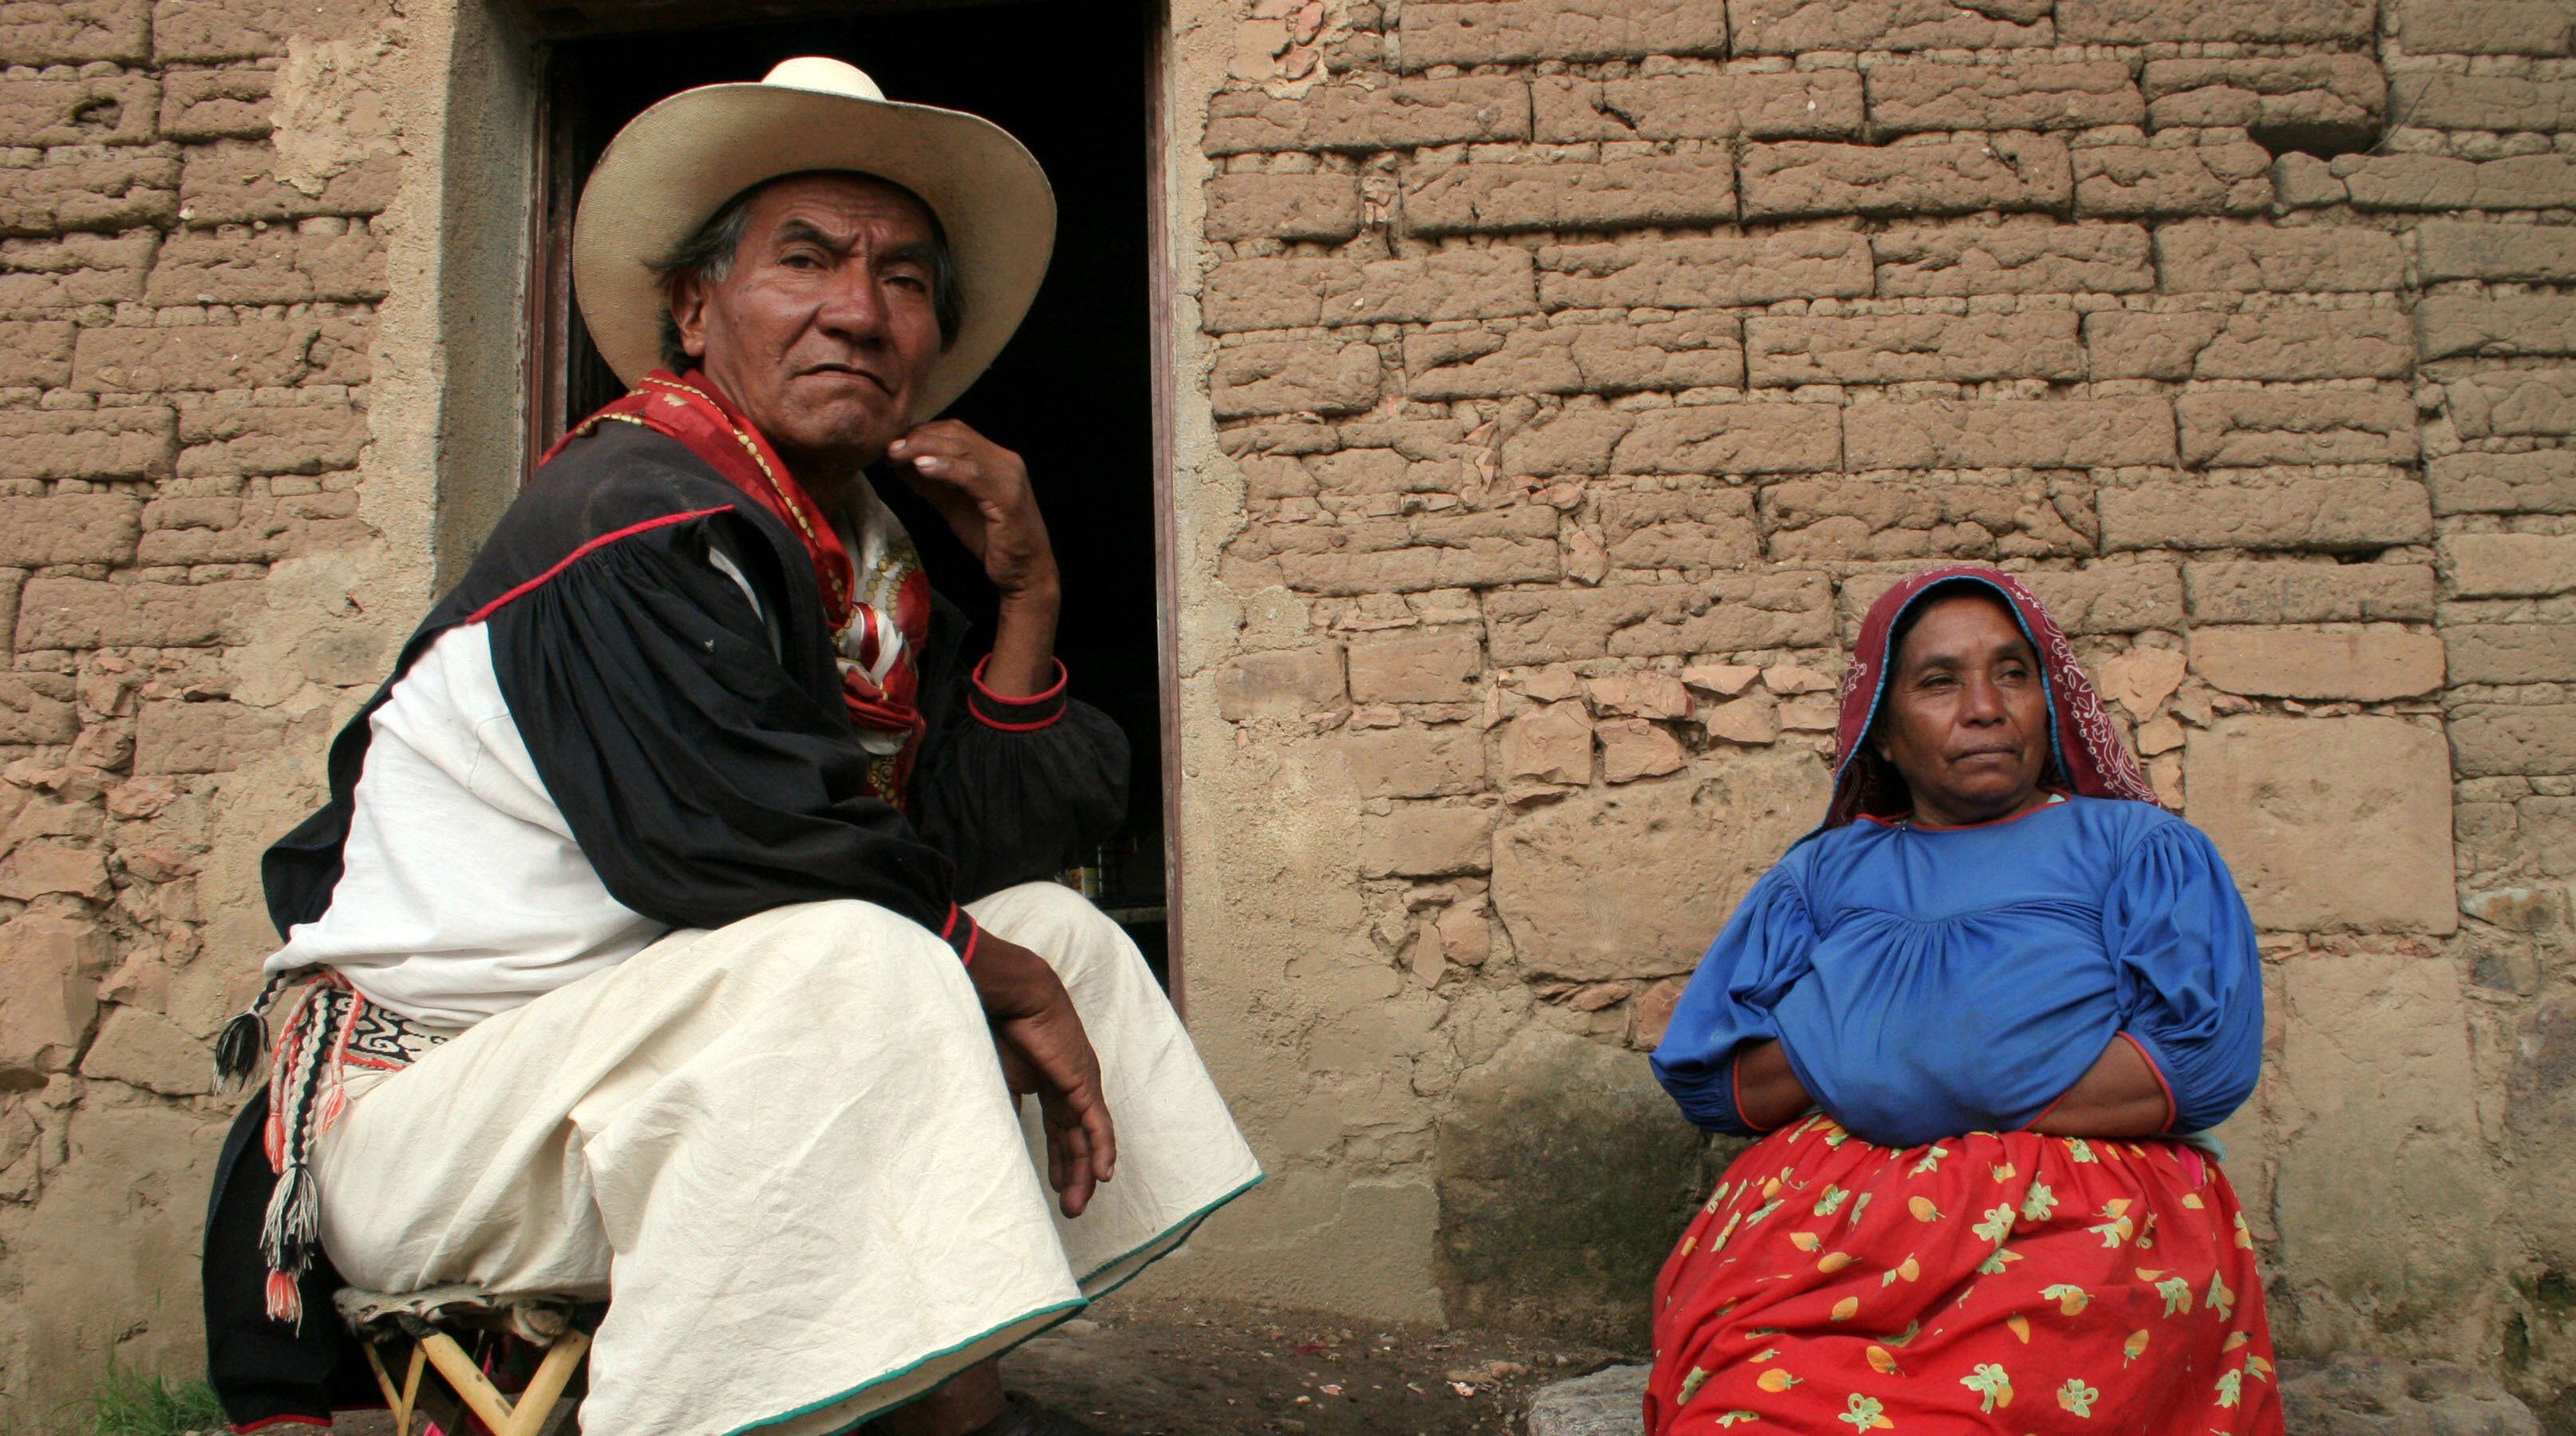 La marginación, la pobreza, la exclusión y el analfabetismo son otros de los obstáculos que mencionan los mexicanos como parte de tener raíces originarias.